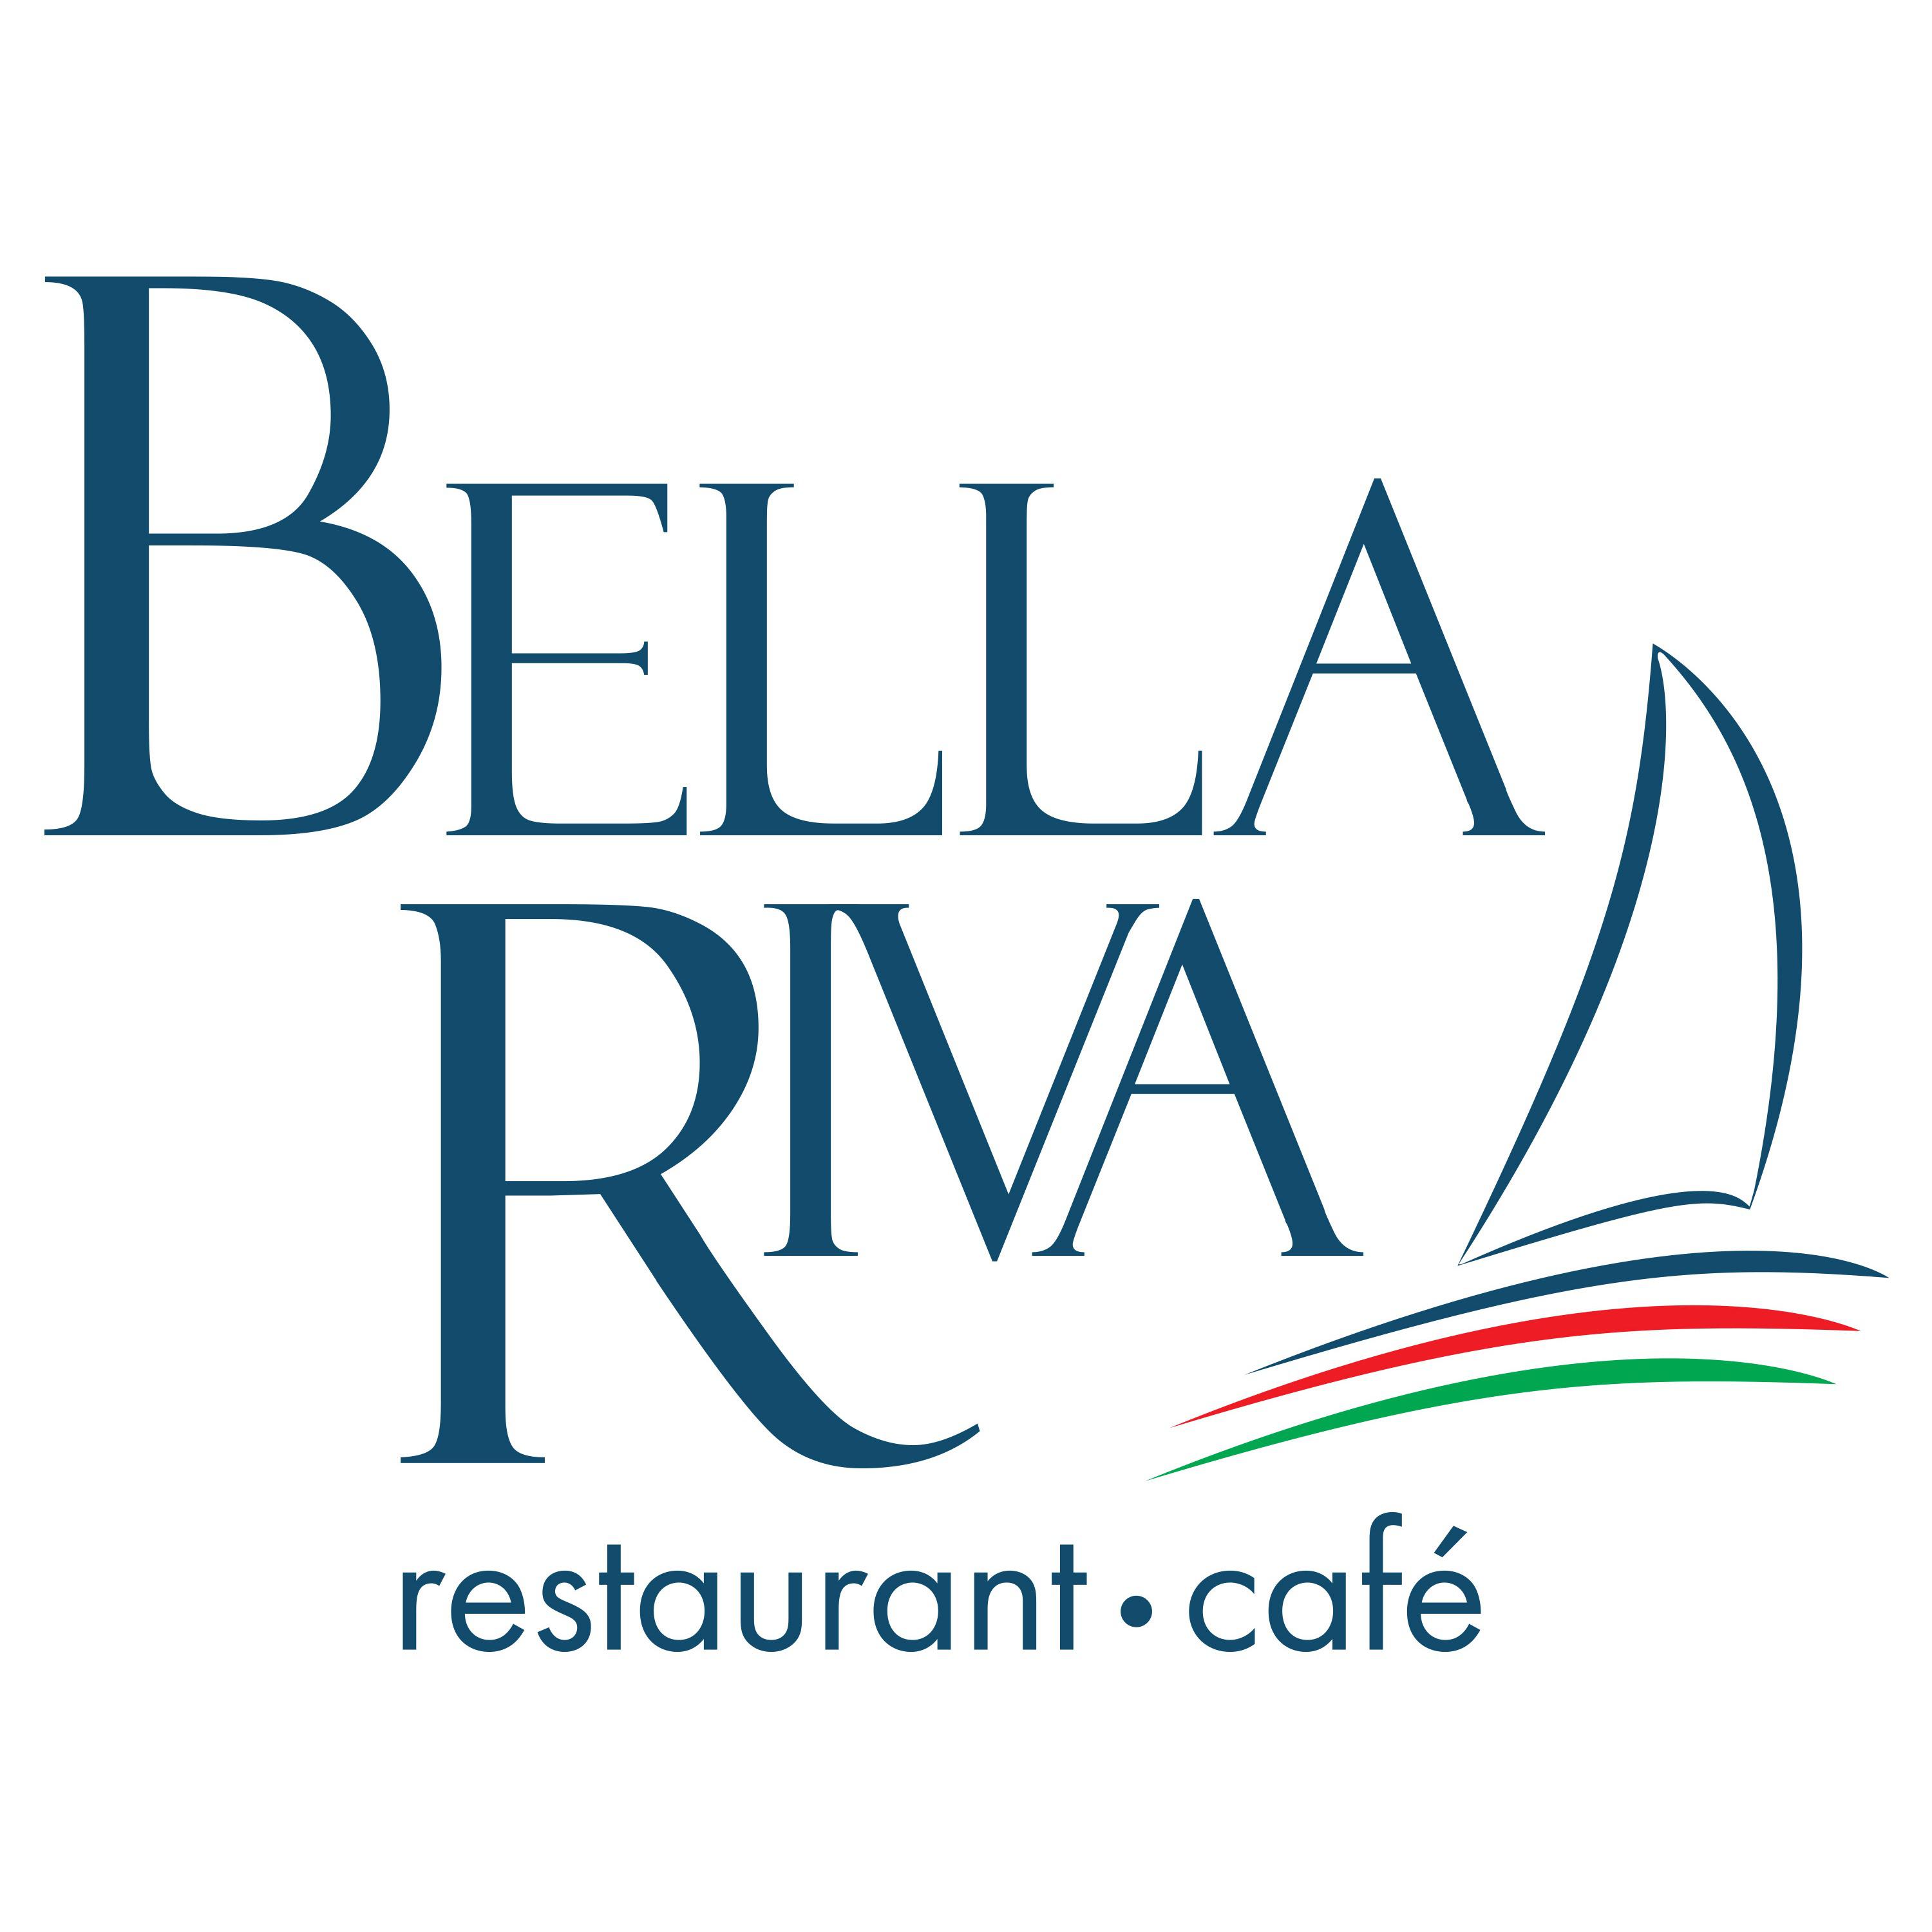 Bella Riva - Restaurant & Café